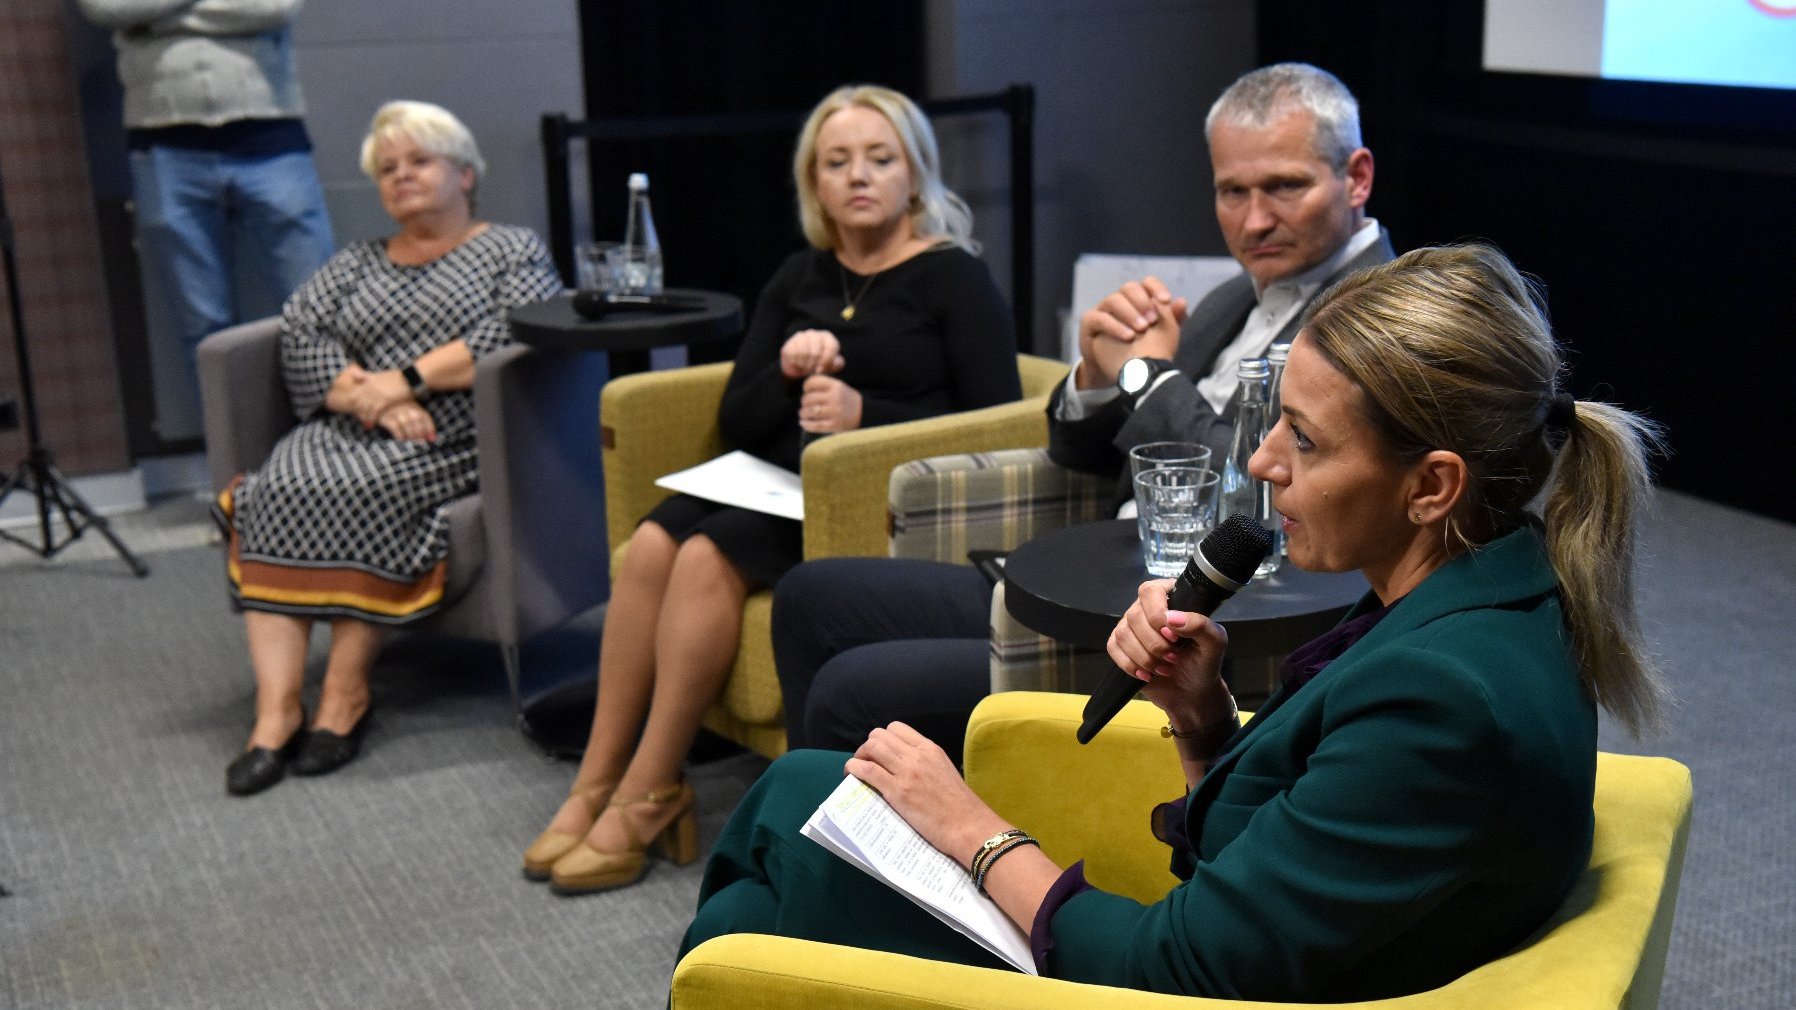 Na zdjęciu konferencja prasowa, cztery osoby na krzesłach, wśród nich trzy kobiety, jedna z nich trzyma mikrofon